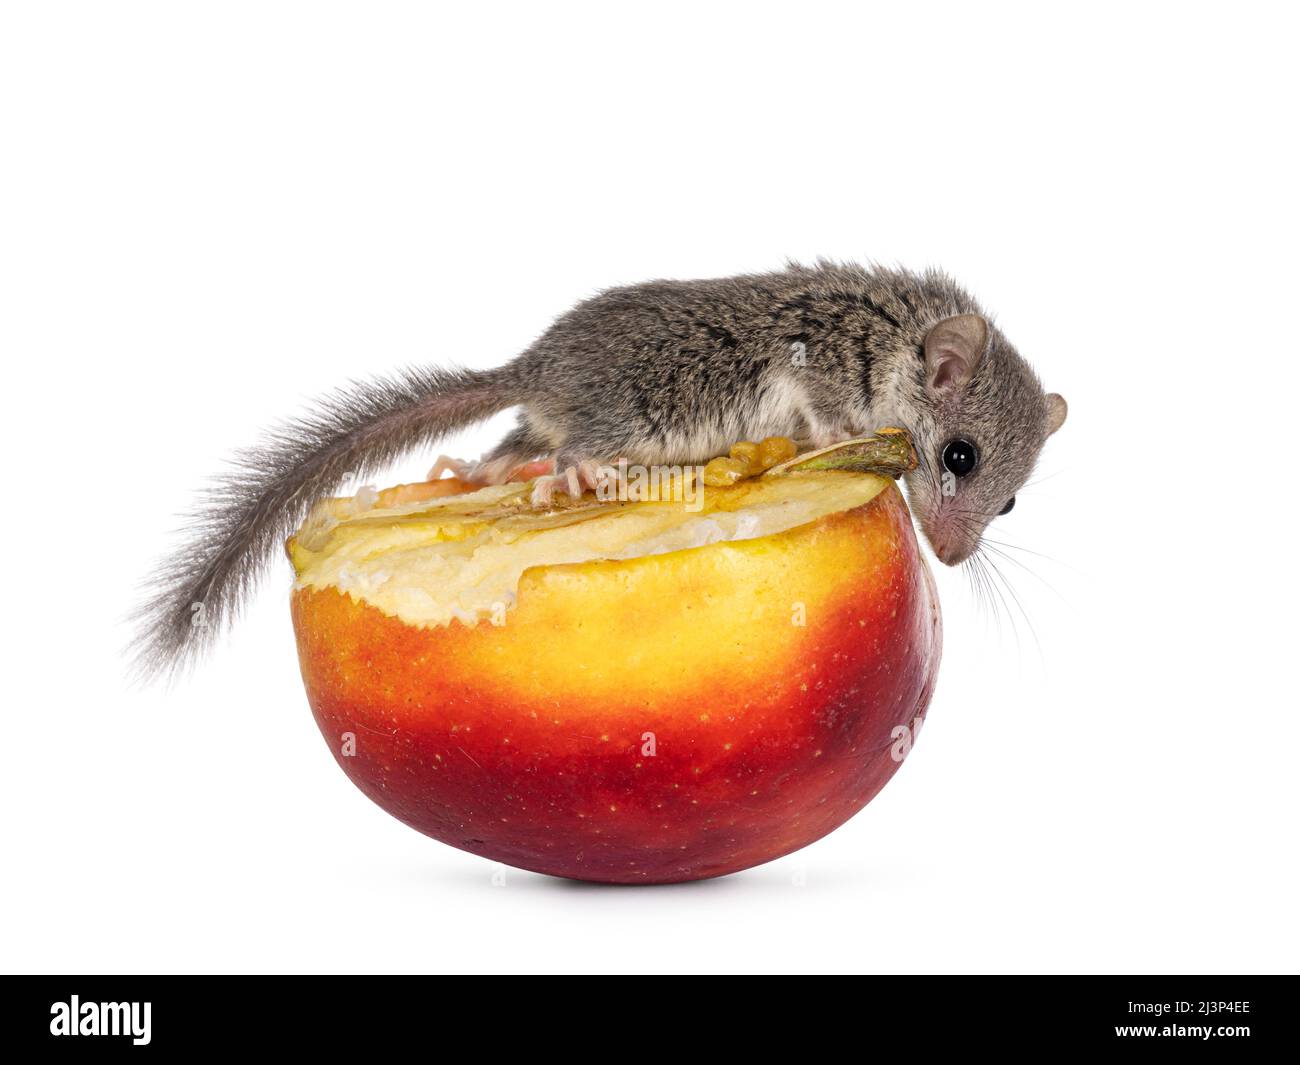 Niedliche kleine afrikanische Dormaus alias Graphiurus murinus, die auf einem gelben und roten Apfel klettert. Vom Obst herunter schauen. Isoliert auf weißem Hintergrund. Stockfoto